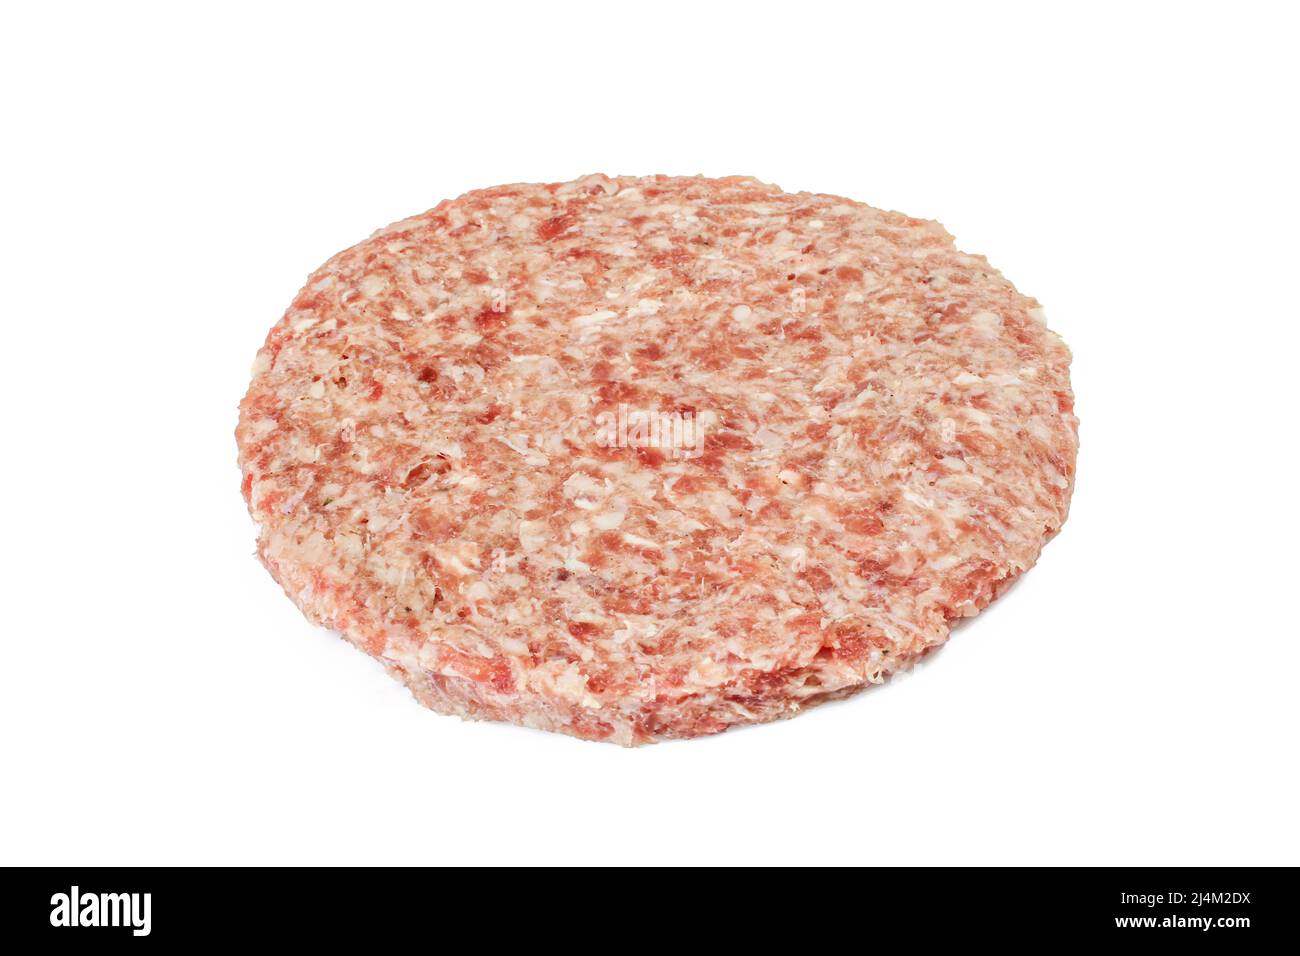 Rinderfleischpastete für Burger isoliert auf weißem Hintergrundba Stockfoto